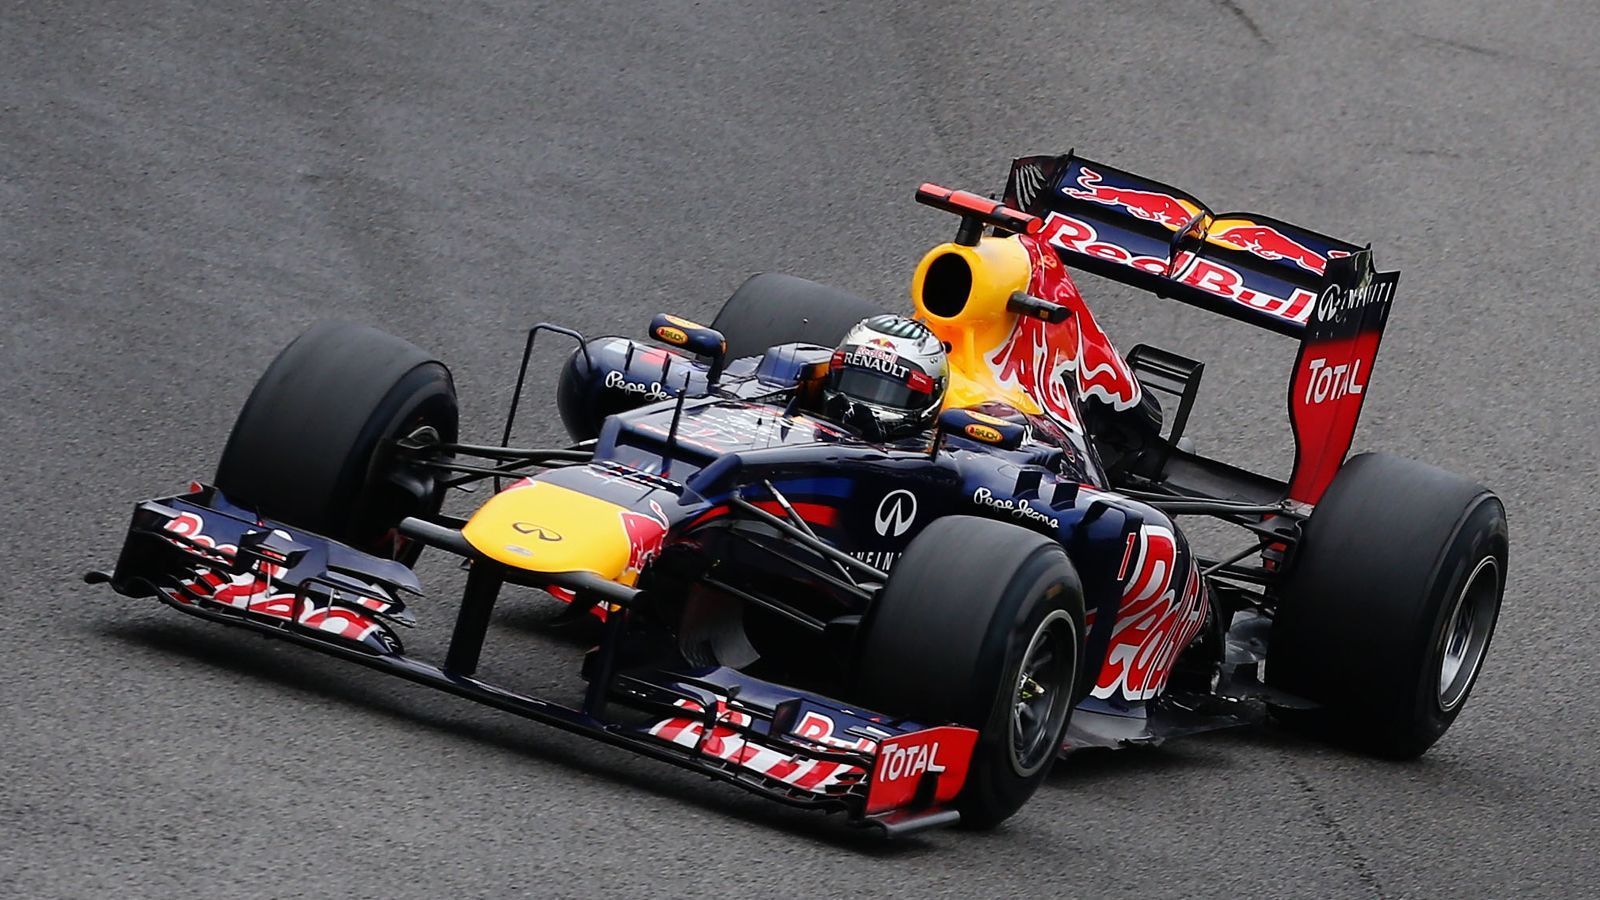 
                <strong>Red Bull RB8 (2012)</strong><br>
                Motor: Renault 2.4 V8Siege: 7Punkte: 460WM-Rang: 1Fahrer: Mark Webber & Sebastian Vettel
              